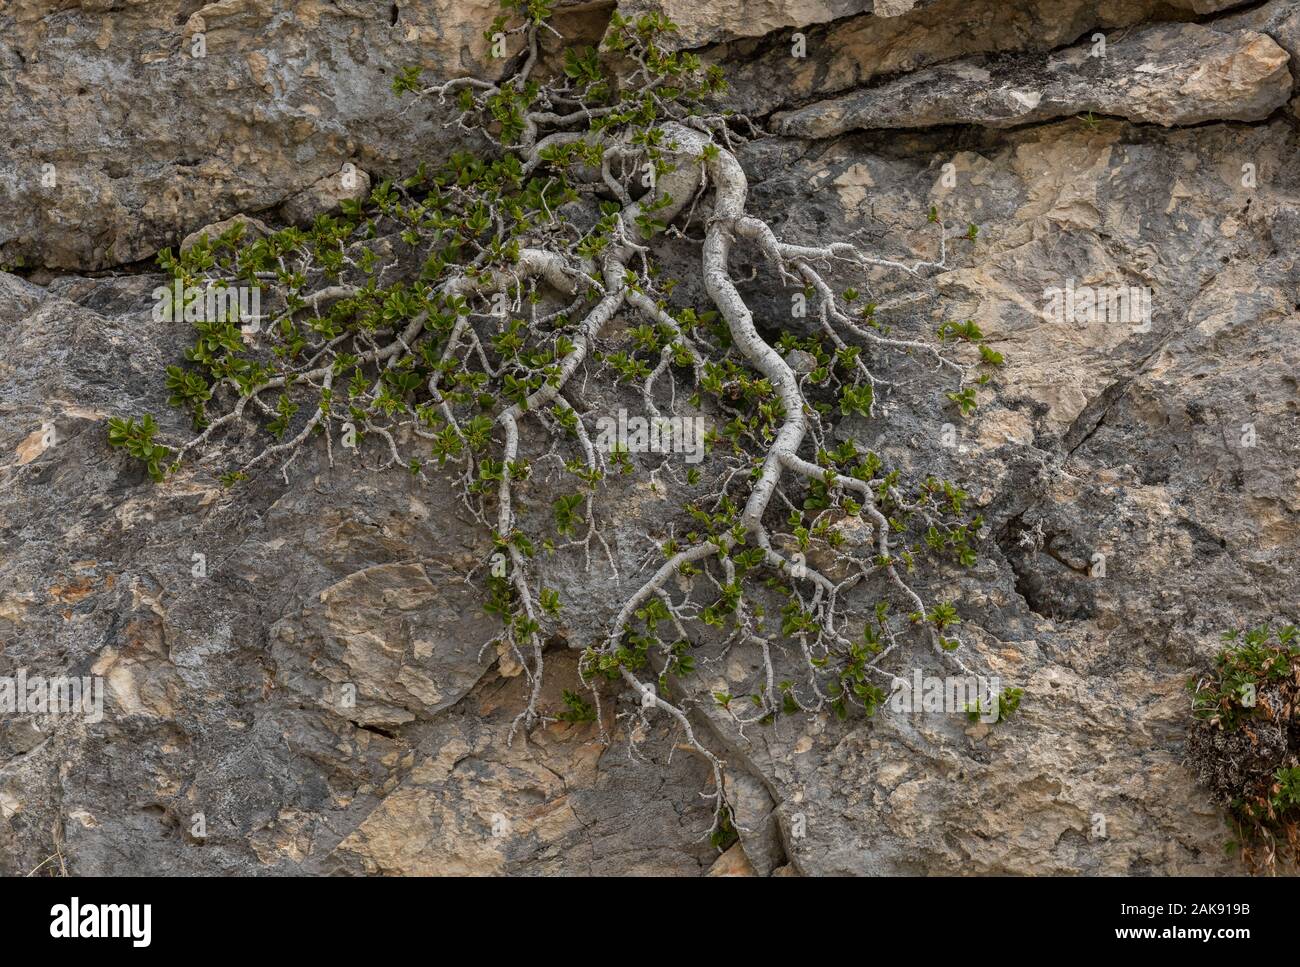 Le nerprun nain, Rhamnus pumila ; bush prostré en fleurs et fruits, sur roche calcaire. Alpes Maritimes. Banque D'Images